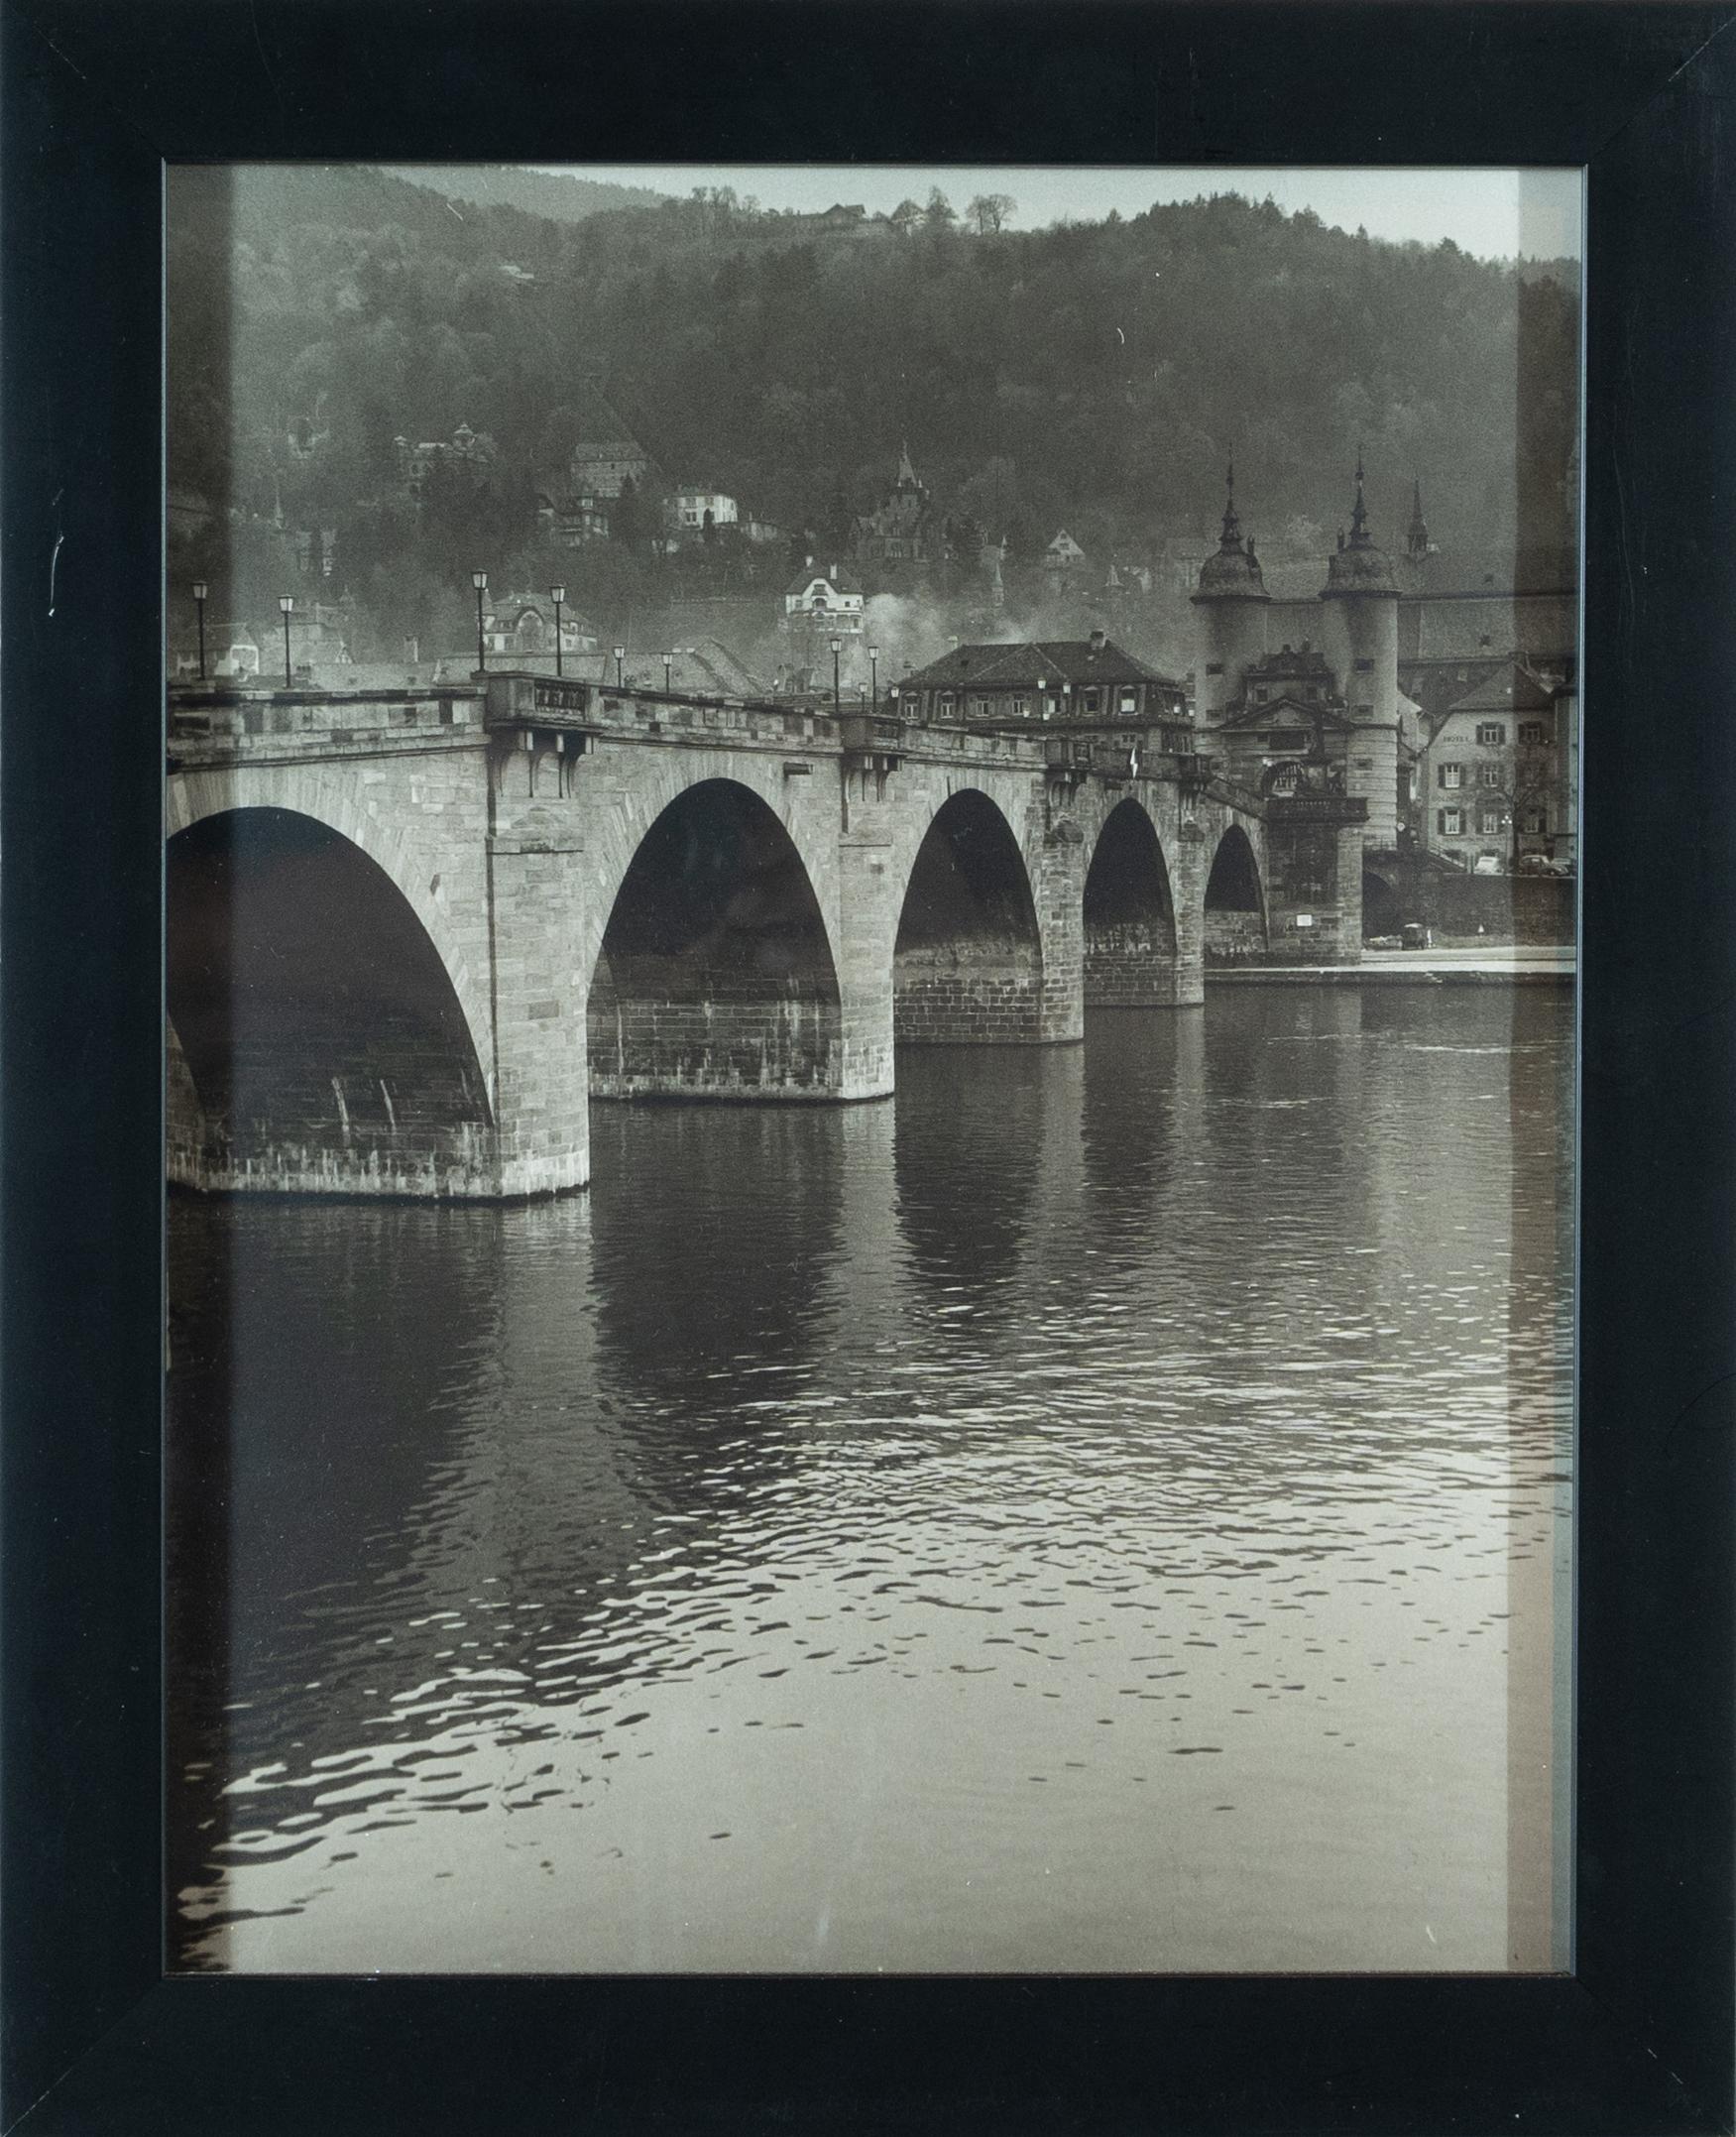 Dieser 20" x 16" große gerahmte Schwarz-Weiß-Fotodruck zeigt eine europäische Brücke, einen Fluss und eine Landschaft. Die Brücke verschwindet auf der linken Seite der Leinwand und führt zu einem scheinbar großen Gebäude auf der rechten Seite des